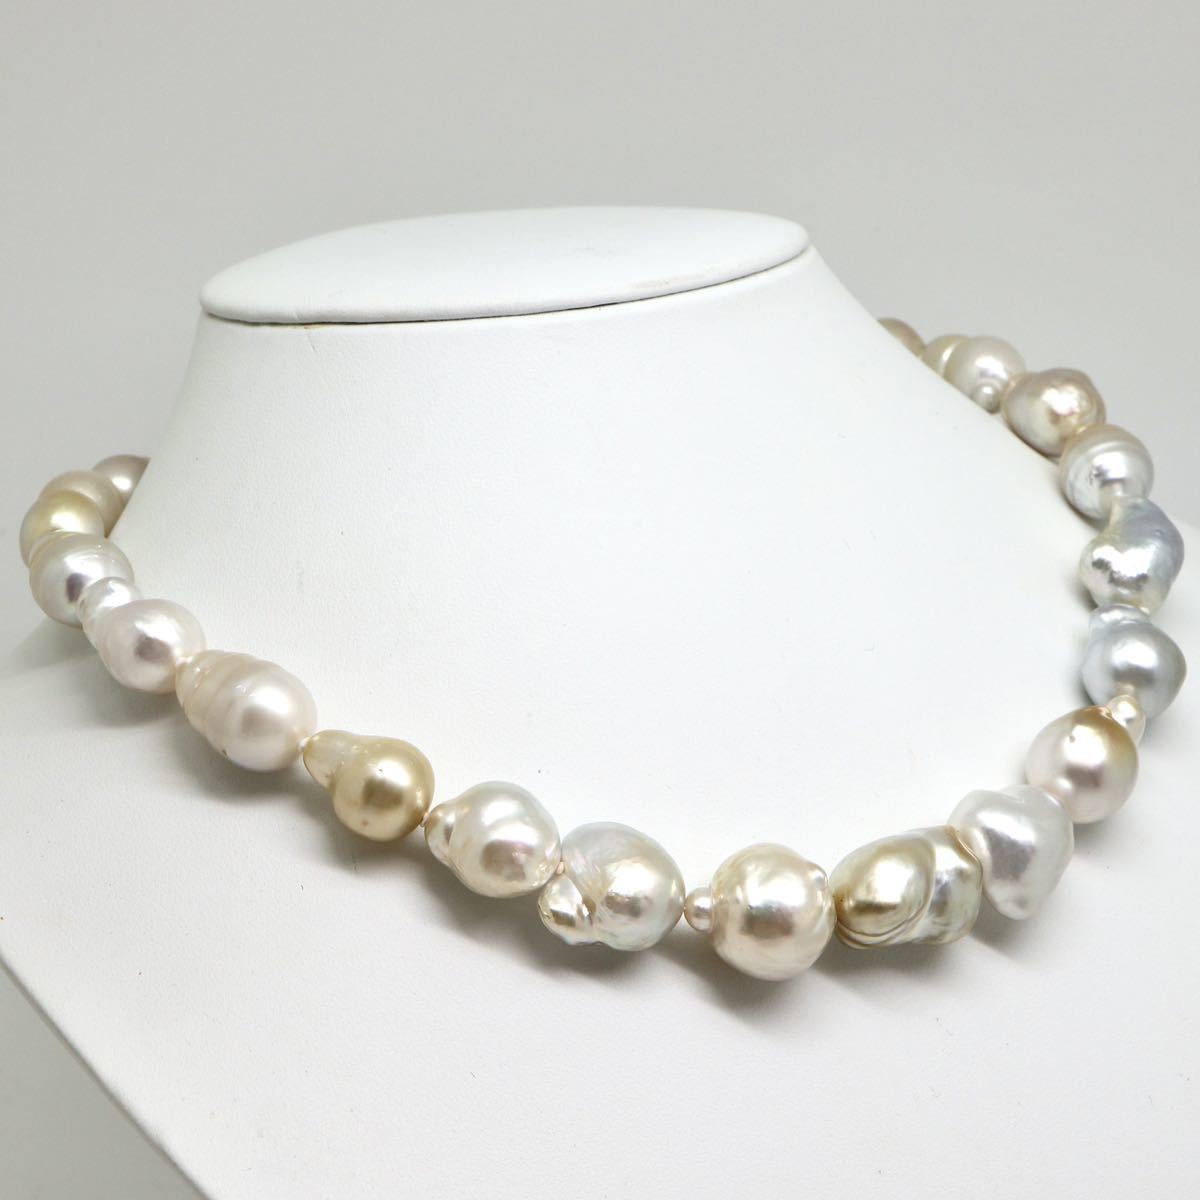 ◆南洋白蝶真珠 バロックパール ネックレス◆M 89.3g 46.0cm 10.0-15.5mm珠 pearl necklace ジュエリー jewelry silver DC0_画像3